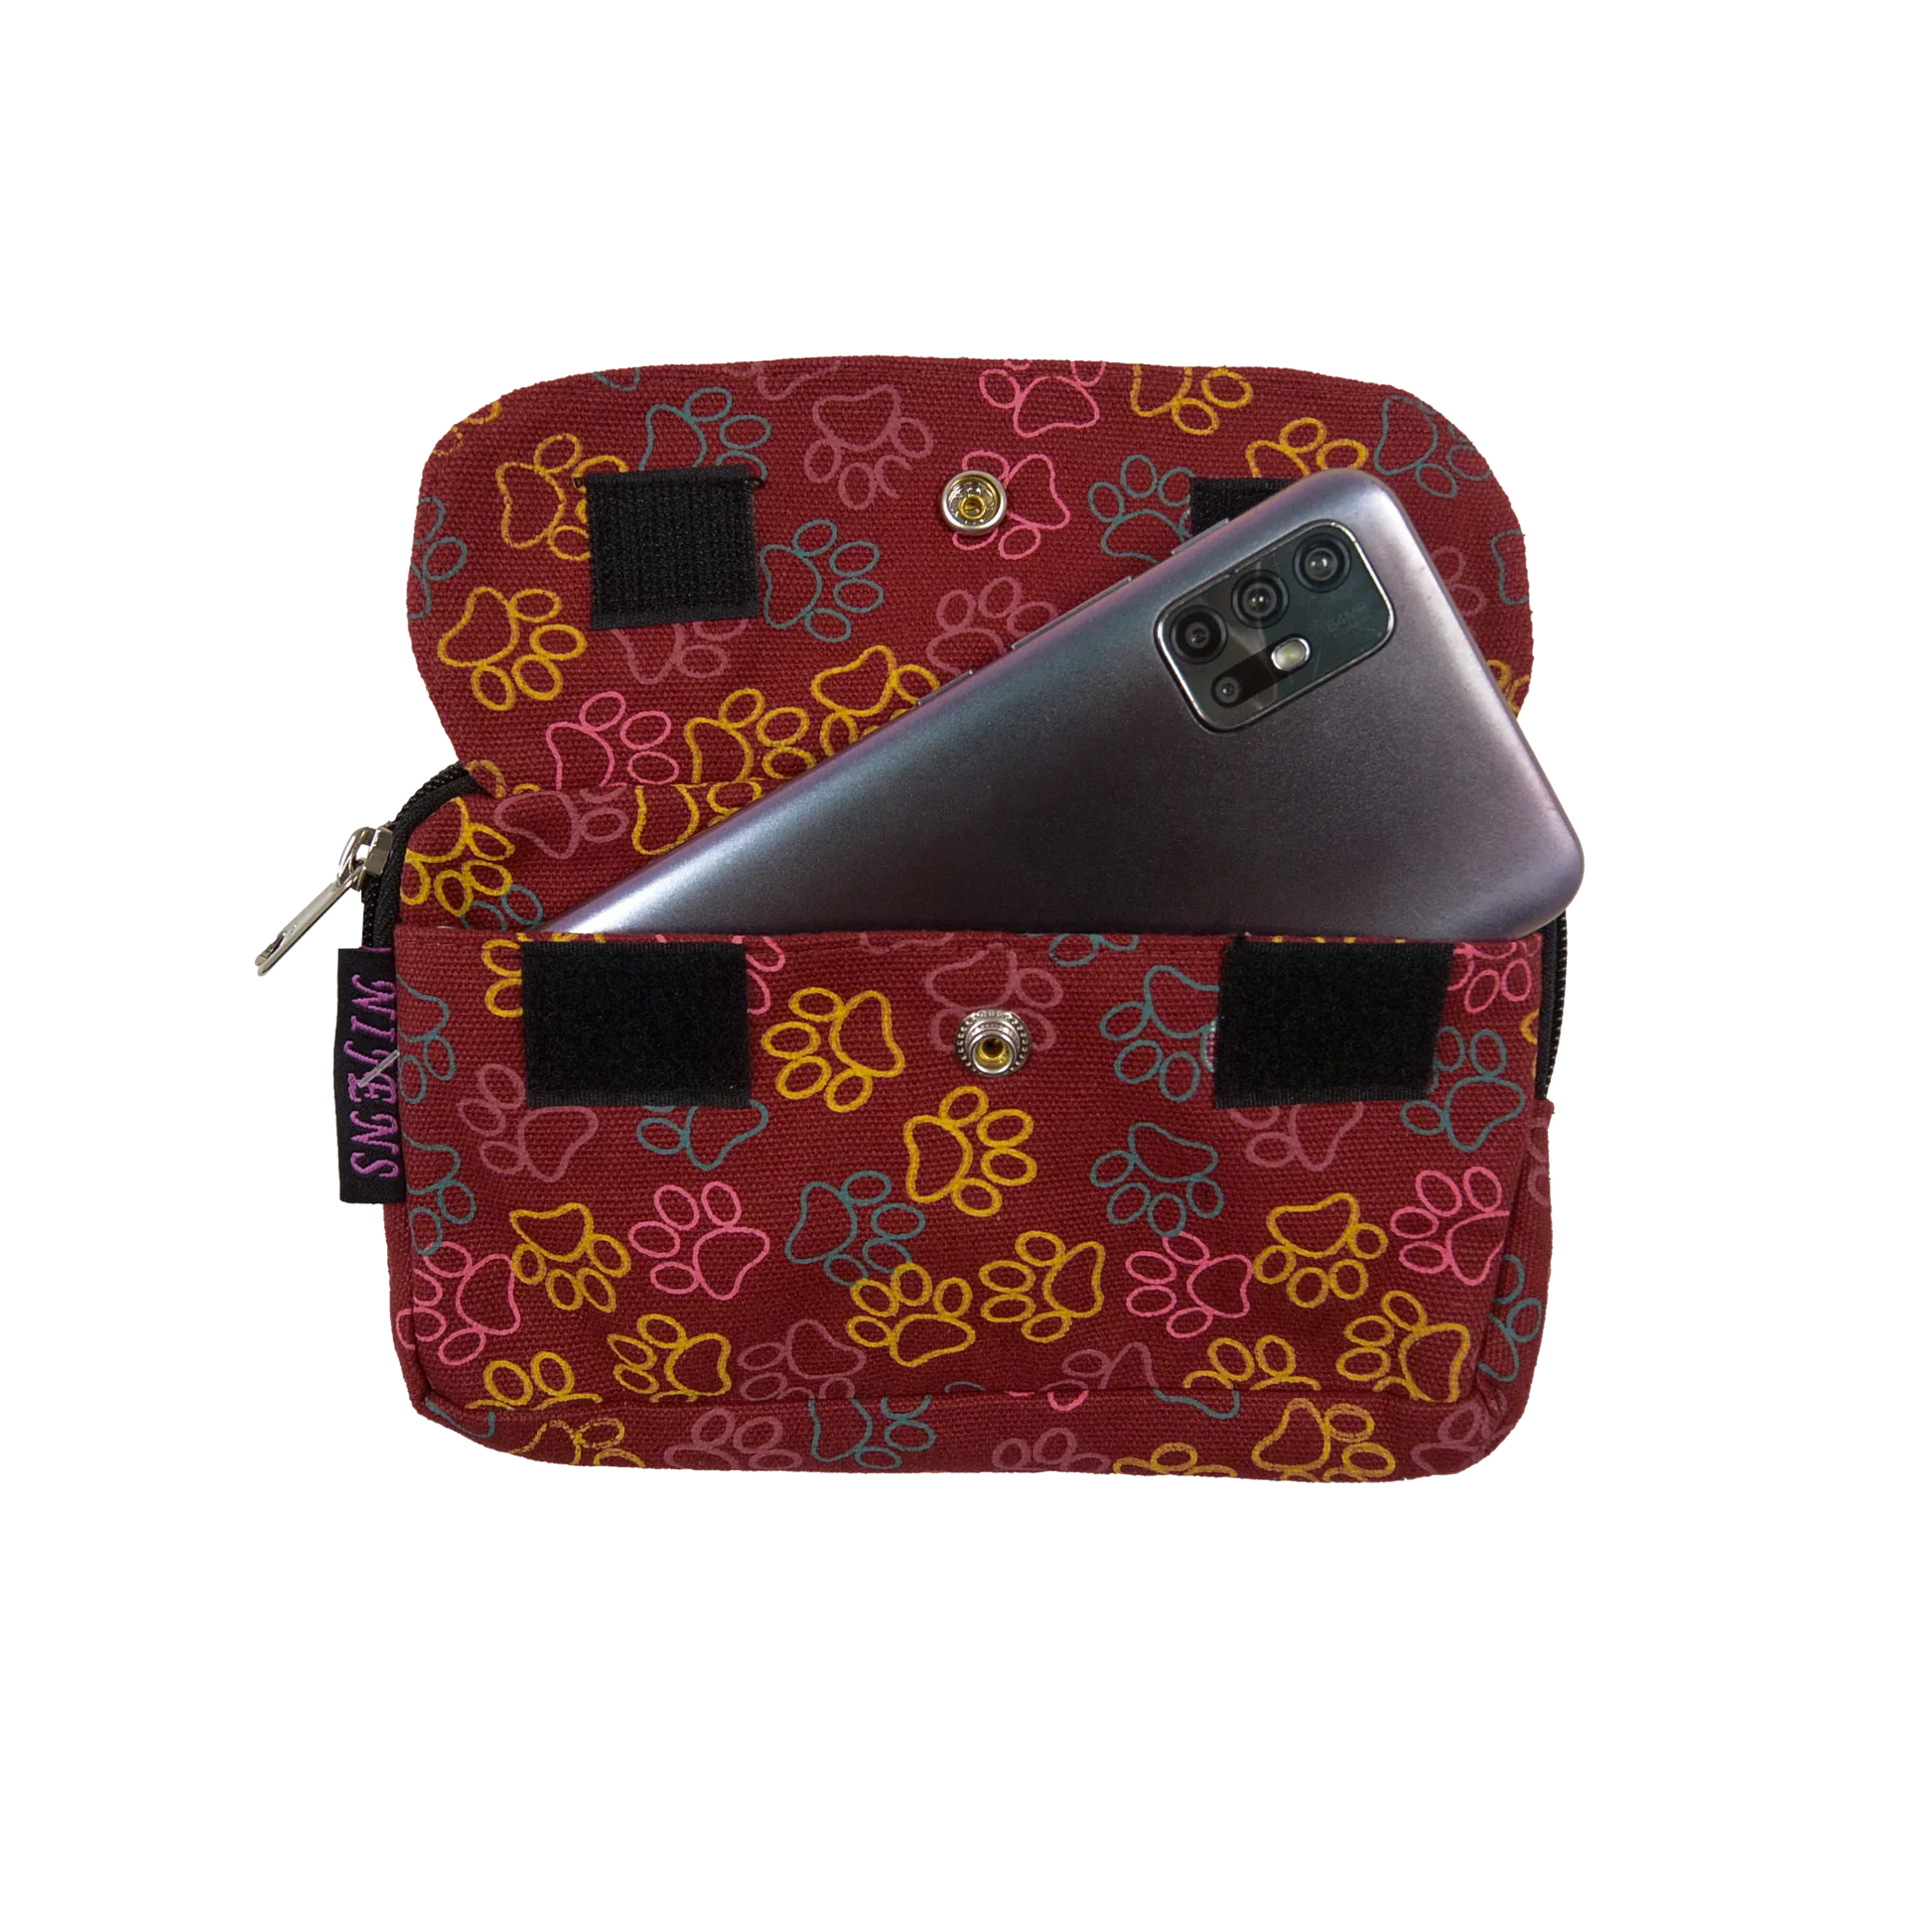 Beuteltasche aus Canvas rot mit Pfotenmotiven. Die Tasche besitzt Reisverschlussfächer und ein Einsteckfach vorne, welches mit Druckknopf und Klett verschließbar ist.